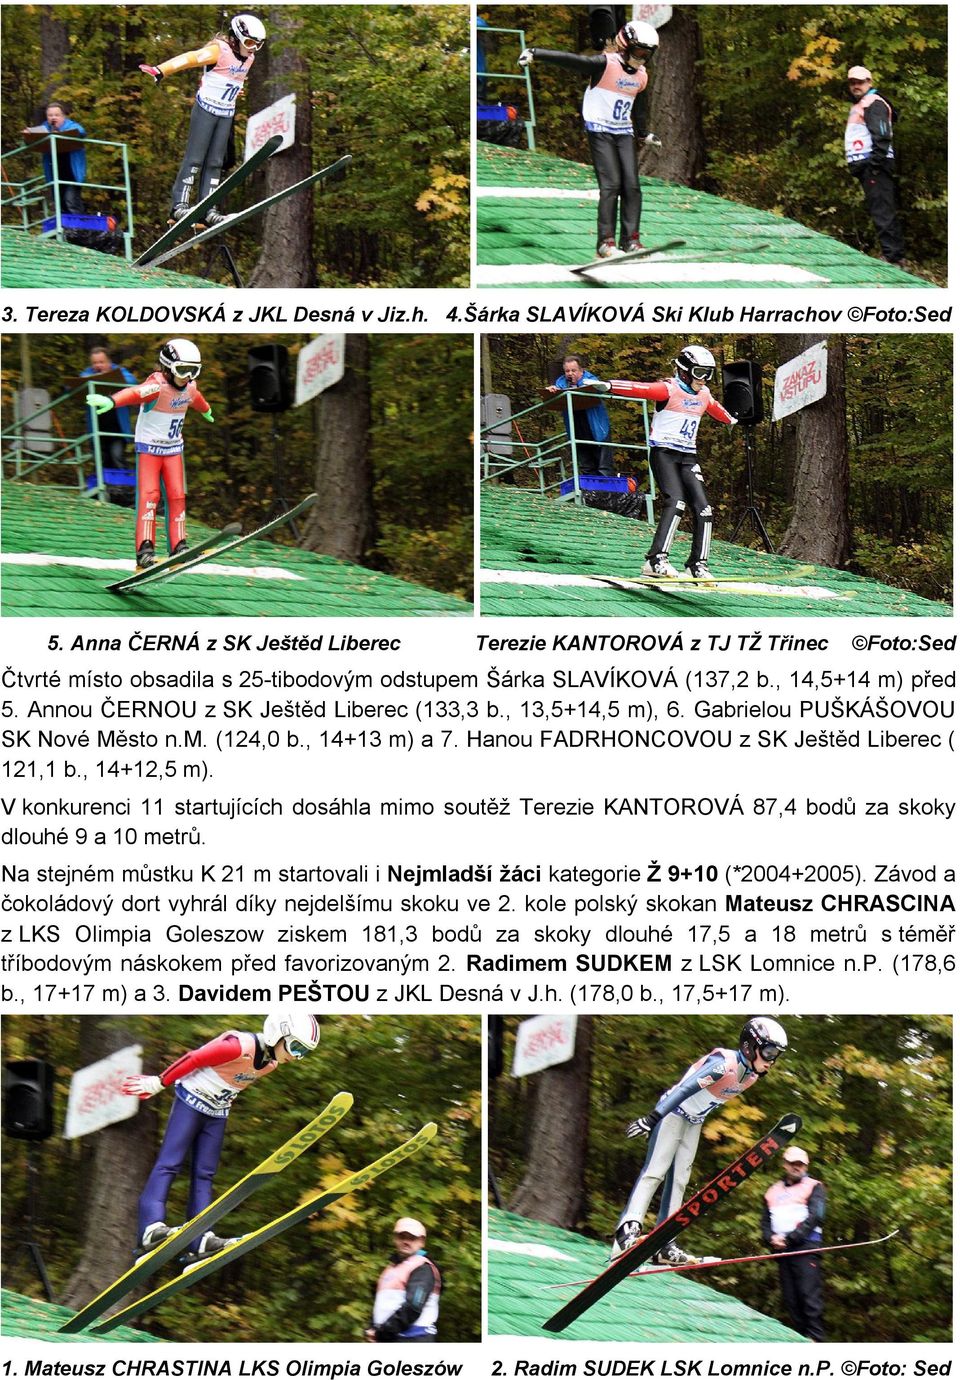 Annou ČERNOU z SK Ještěd Liberec (133,3 b., 13,5+14,5 m), 6. Gabrielou PUŠKÁŠOVOU SK Nové Město n.m. (124,0 b., 14+13 m) a 7. Hanou FADRHONCOVOU z SK Ještěd Liberec ( 121,1 b., 14+12,5 m).